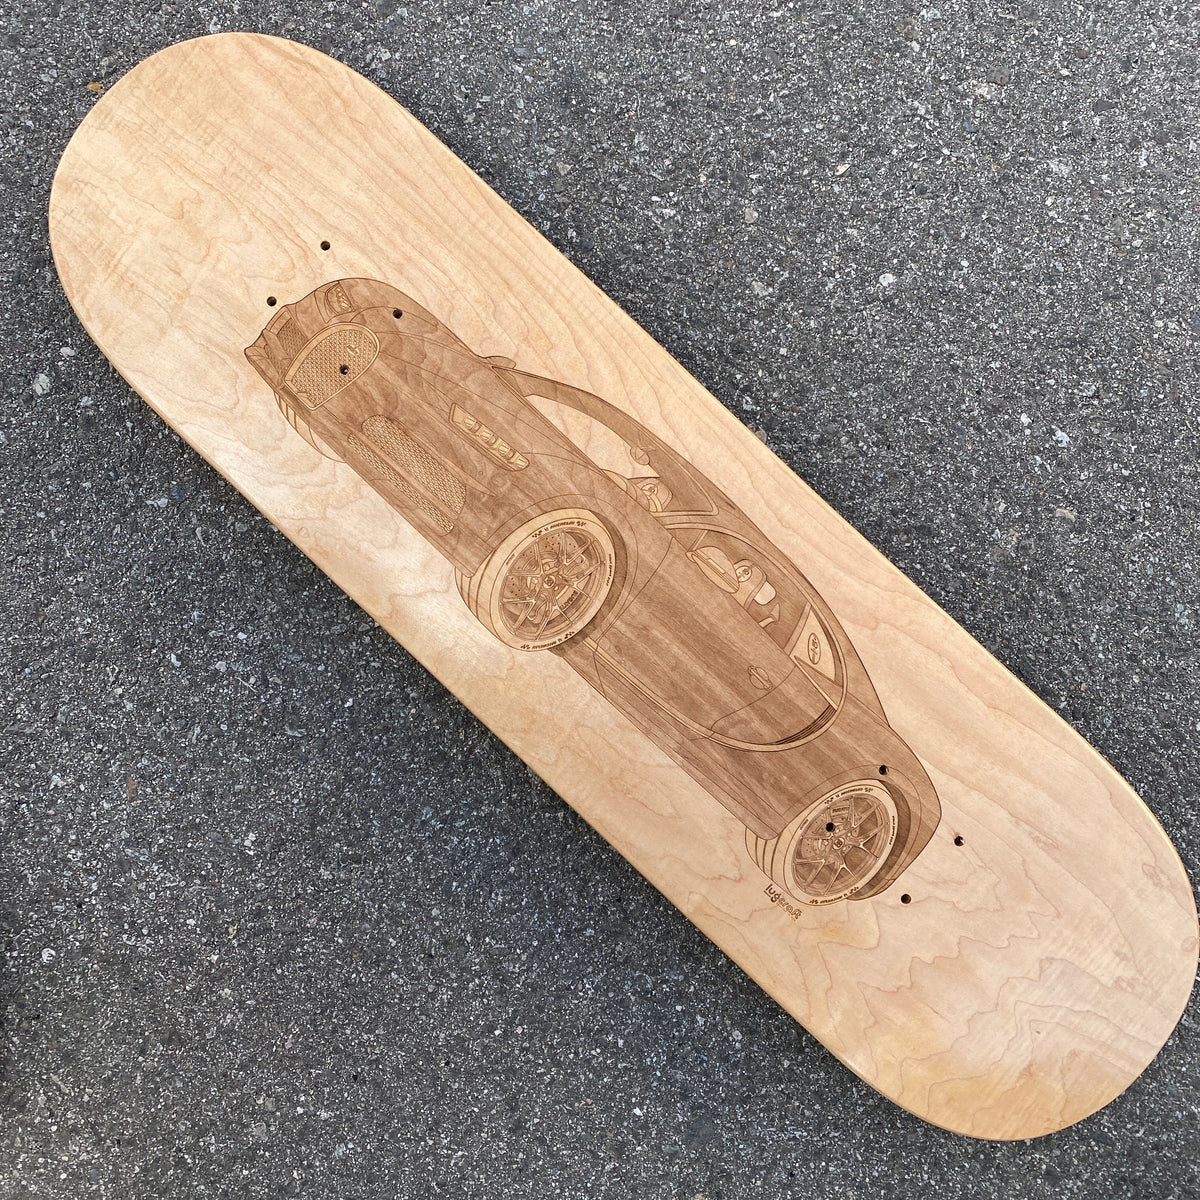 Bugatti Chiron Skateboard Deck Art